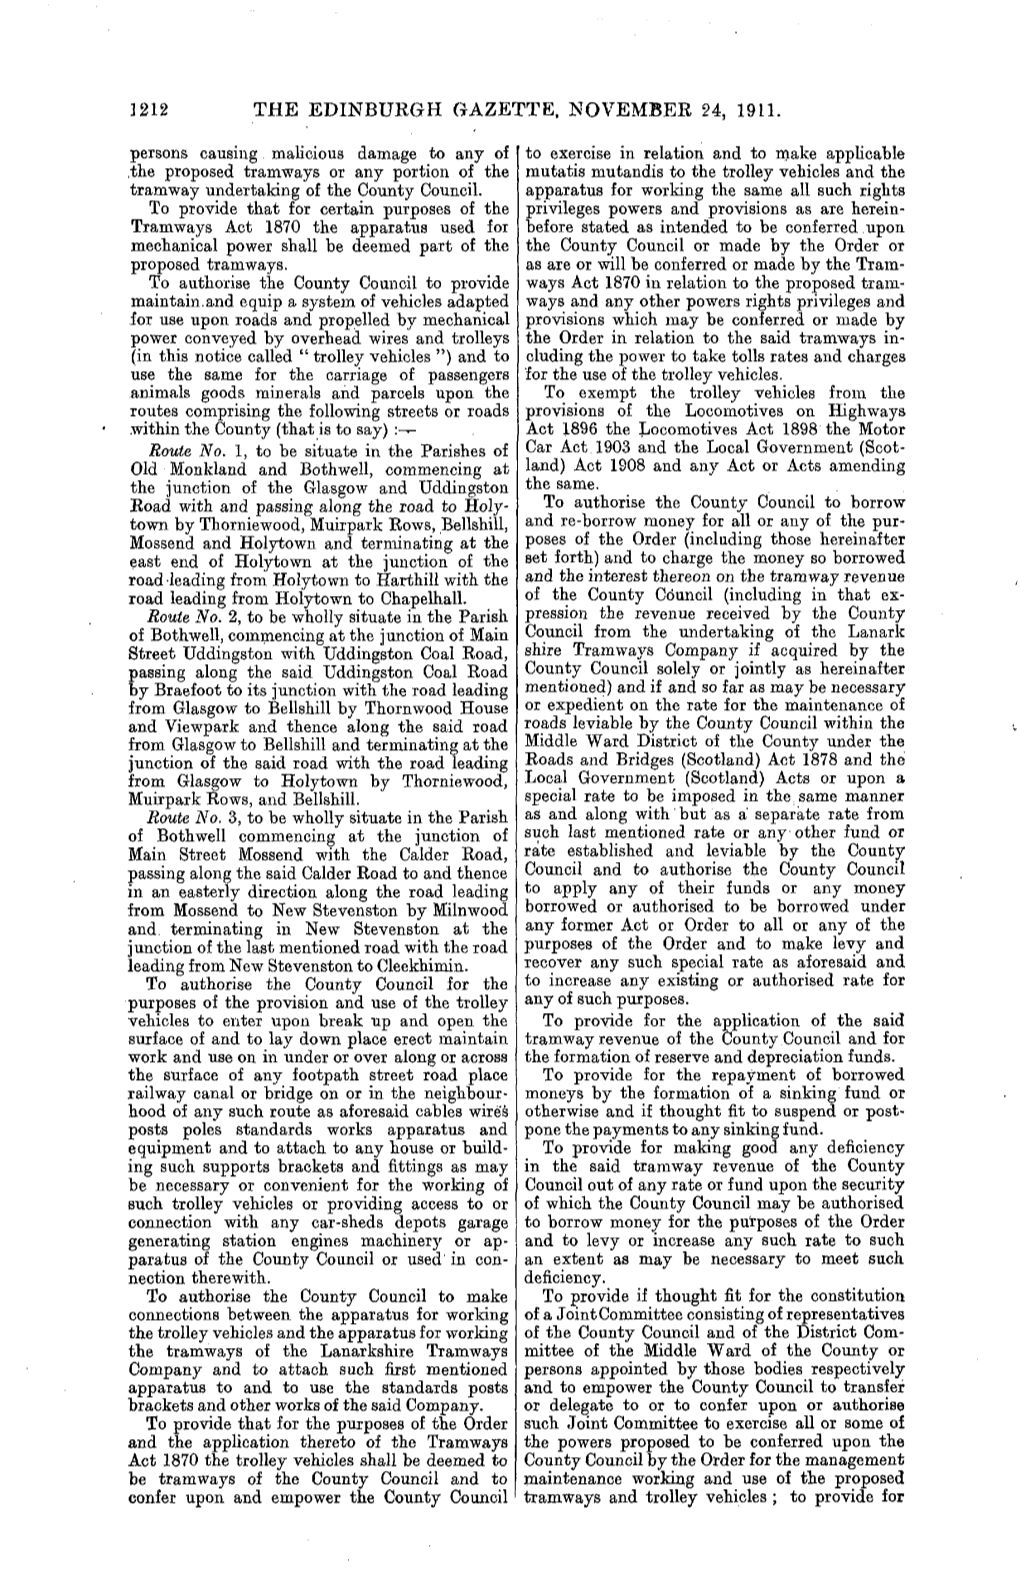 The Edinburgh Gazette, November 24, 1911